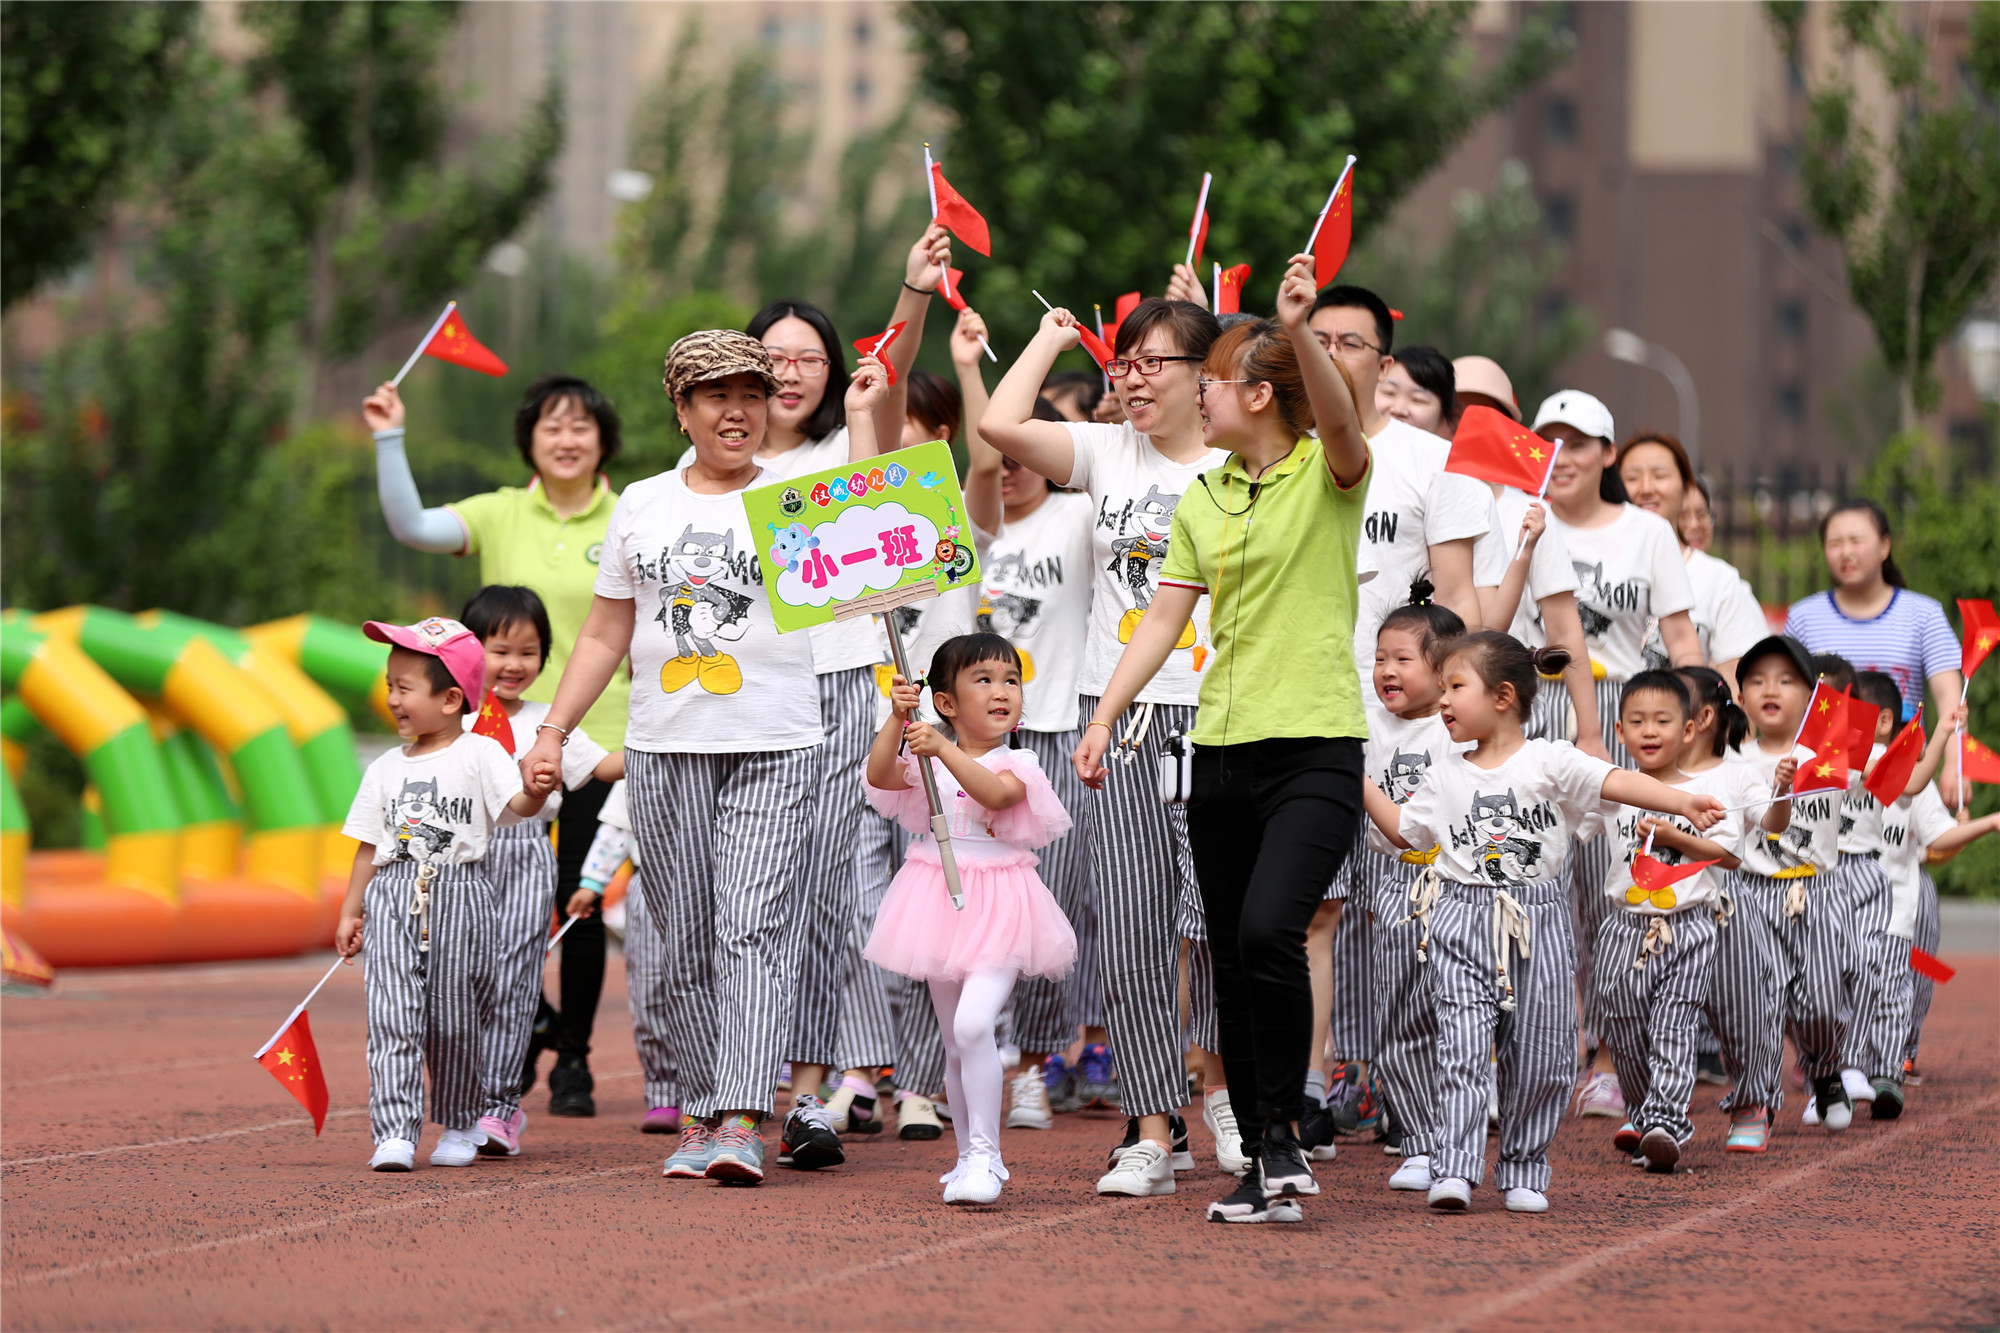 迎儿童节 沈阳汉城幼儿园举办亲子运动会 萌娃比赛萌劲十足